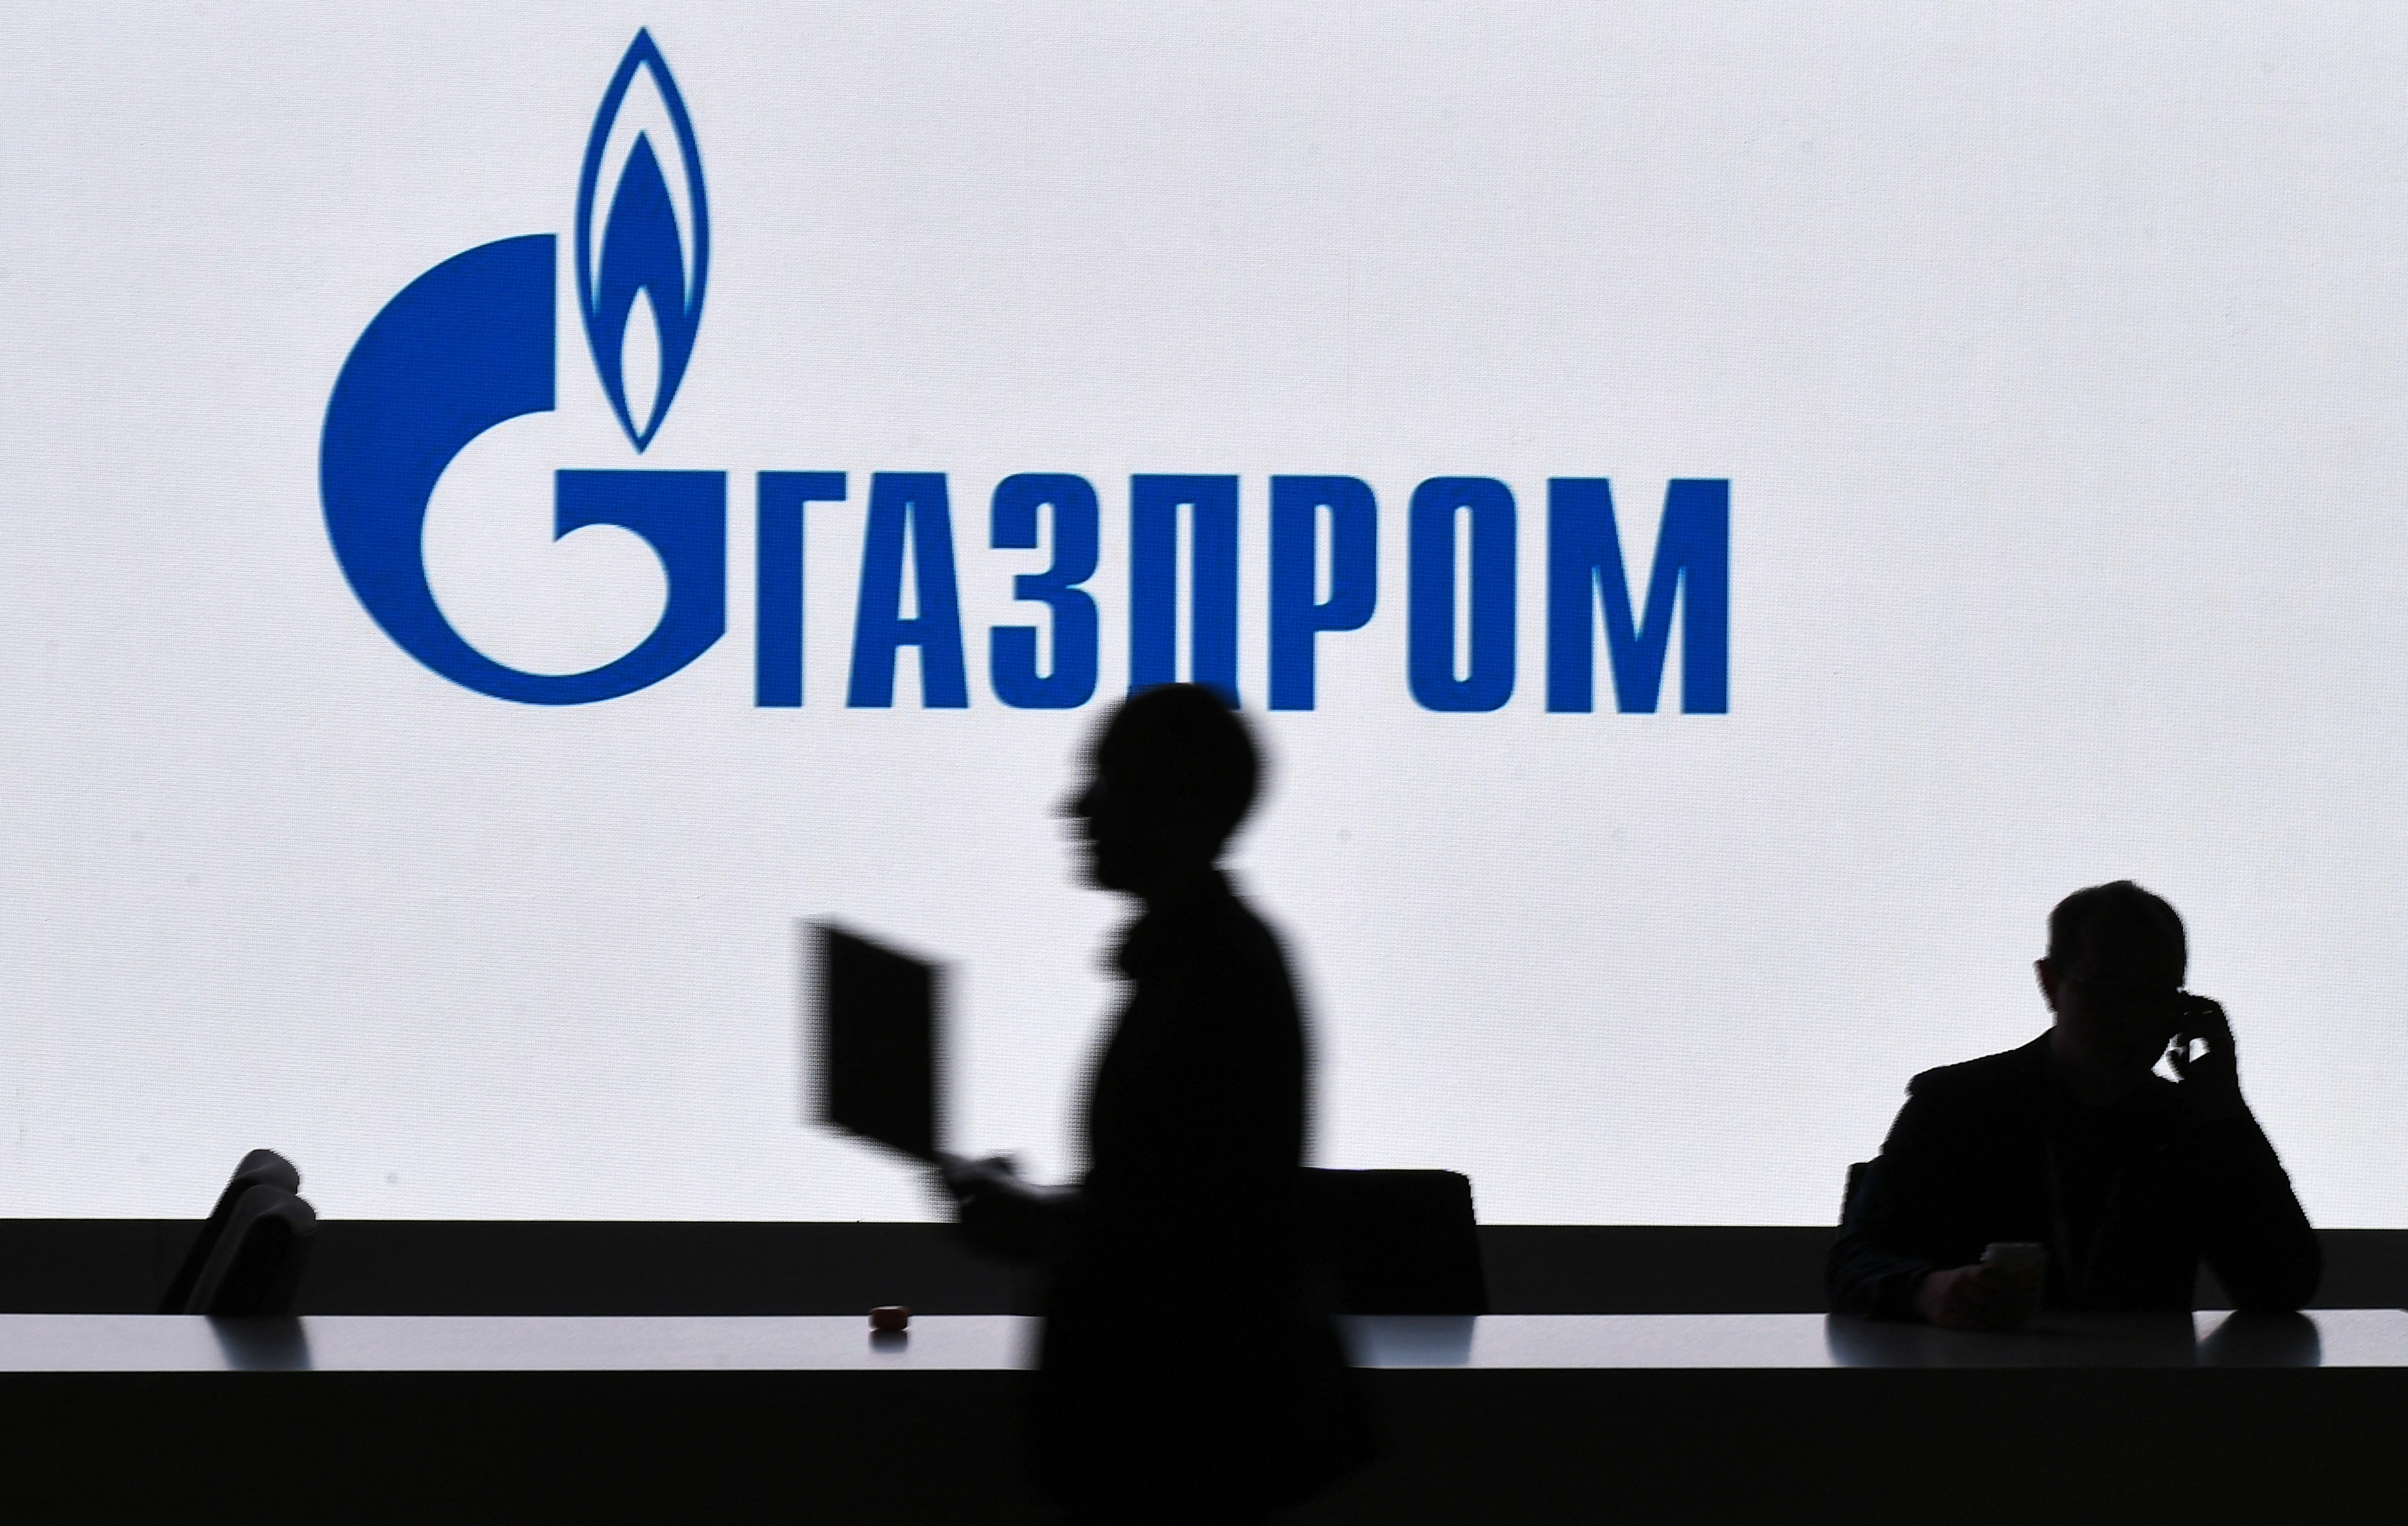 Olaszországba felére csökkenti, Franciaországba teljesen leállítja a gázszállítást a Gazprom